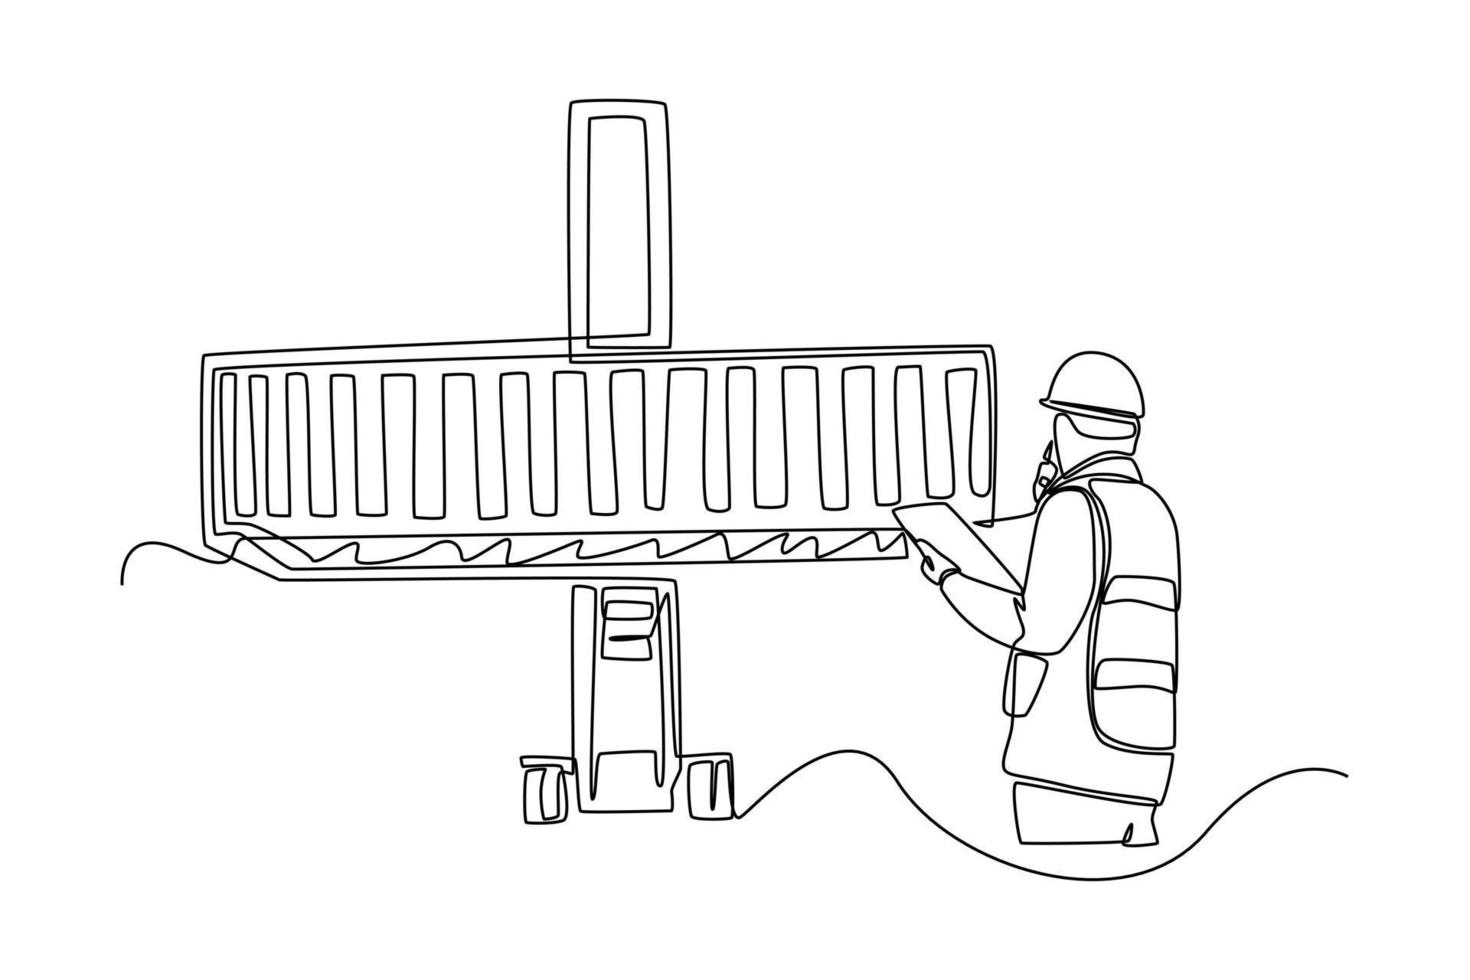 hombre de dibujo de una línea continua con casco de seguridad y control de walkie talkie cargando contenedores desde la carga. concepto de carga. ilustración gráfica vectorial de diseño de dibujo de una sola línea. vector